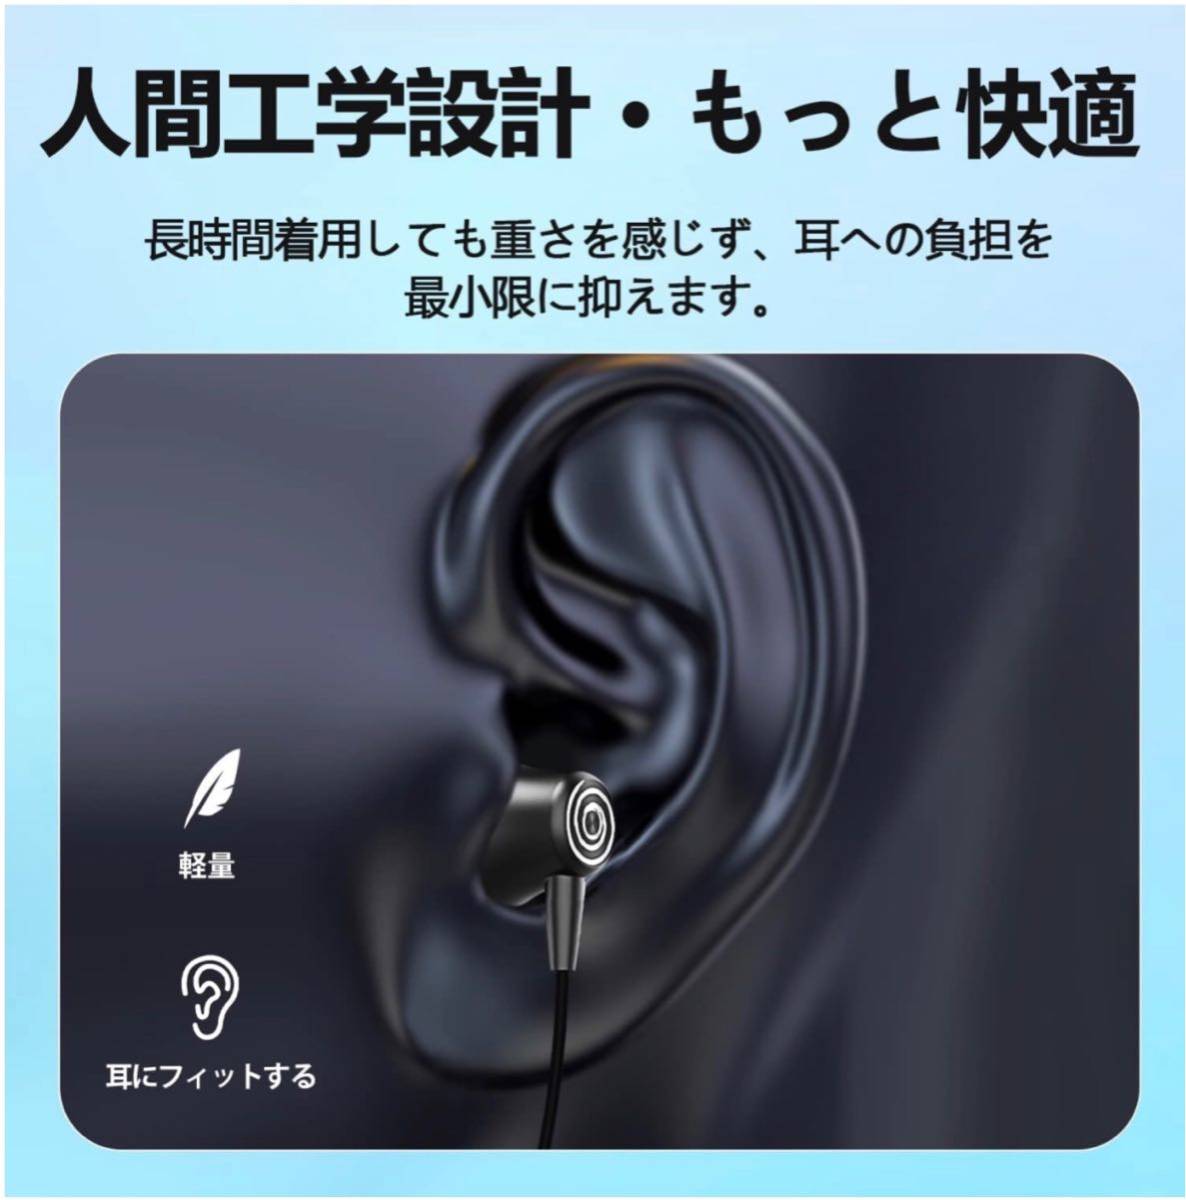 【アップグレード新版】 Bluetooth5.1 イヤホン 首かけイヤホン スポーツイヤホン ワイヤレスイヤホン Bluetooth_画像6